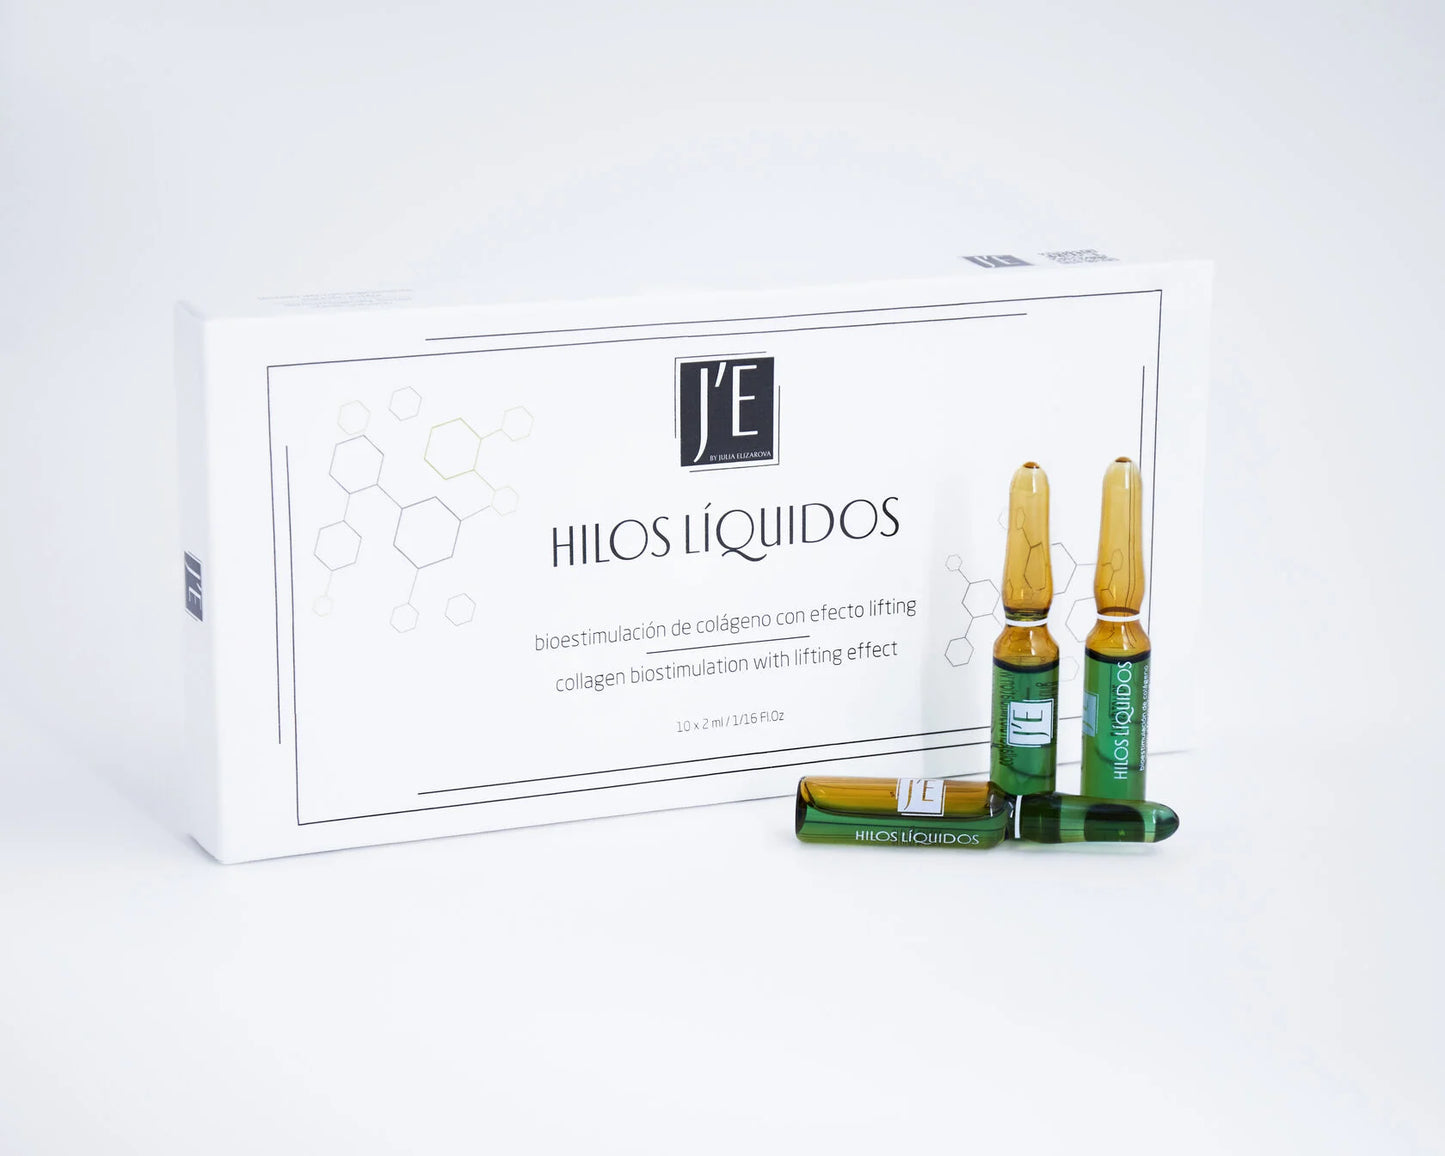 HILOS LÍQUIDOS- bioestimulación de colágeno con efecto lifting